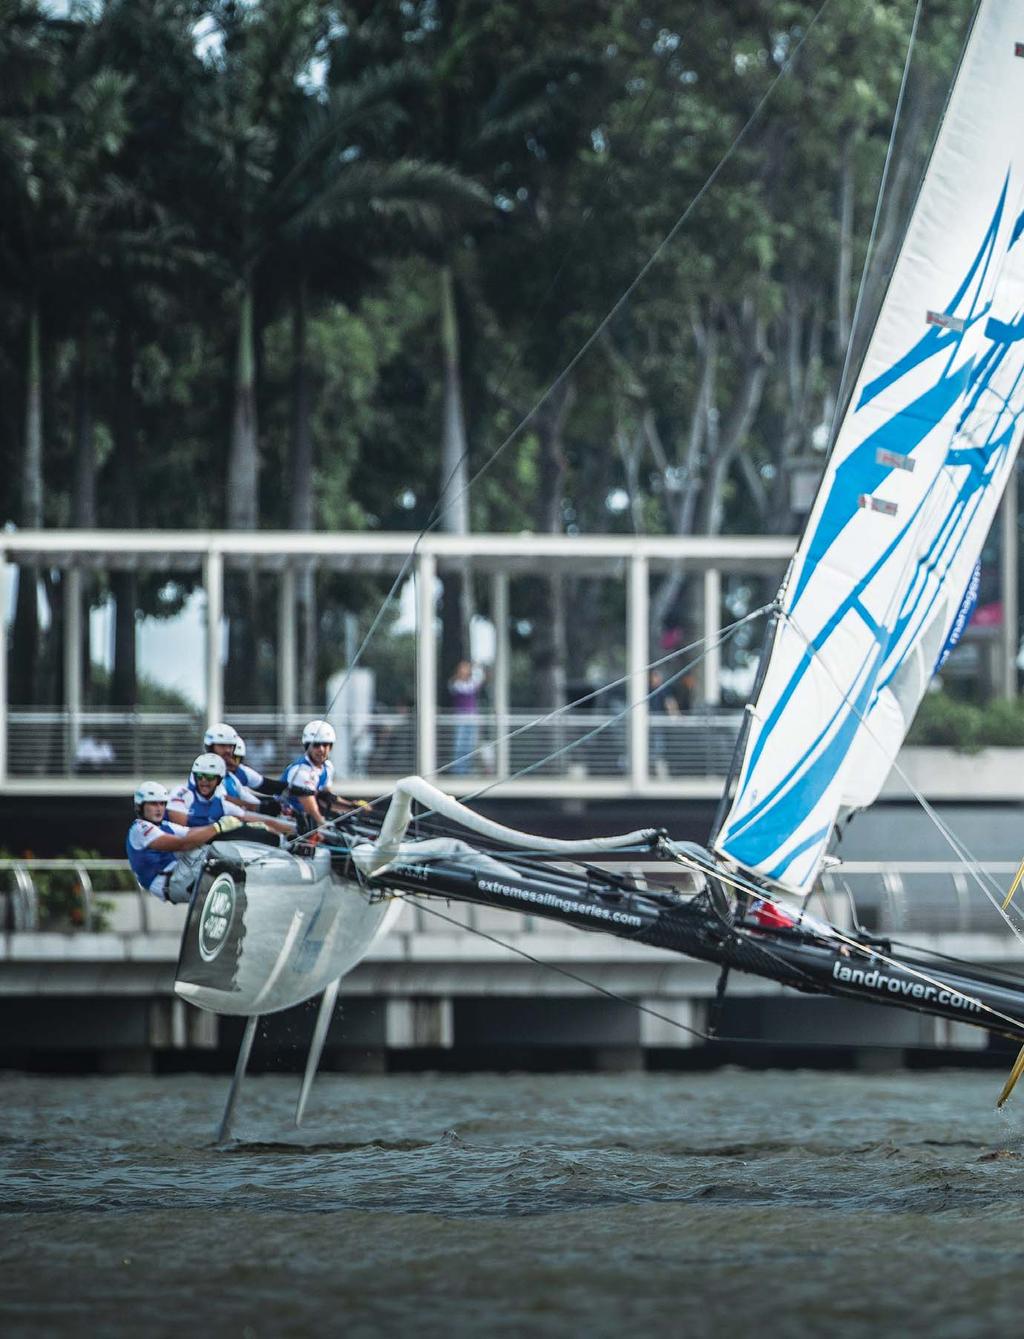 BLIKFANG LLOYD IMAGES ESS Det professionelle danske sejlerhold, SAP Extreme Sailing Team opnåede en meget flot andenplads i Singapore.